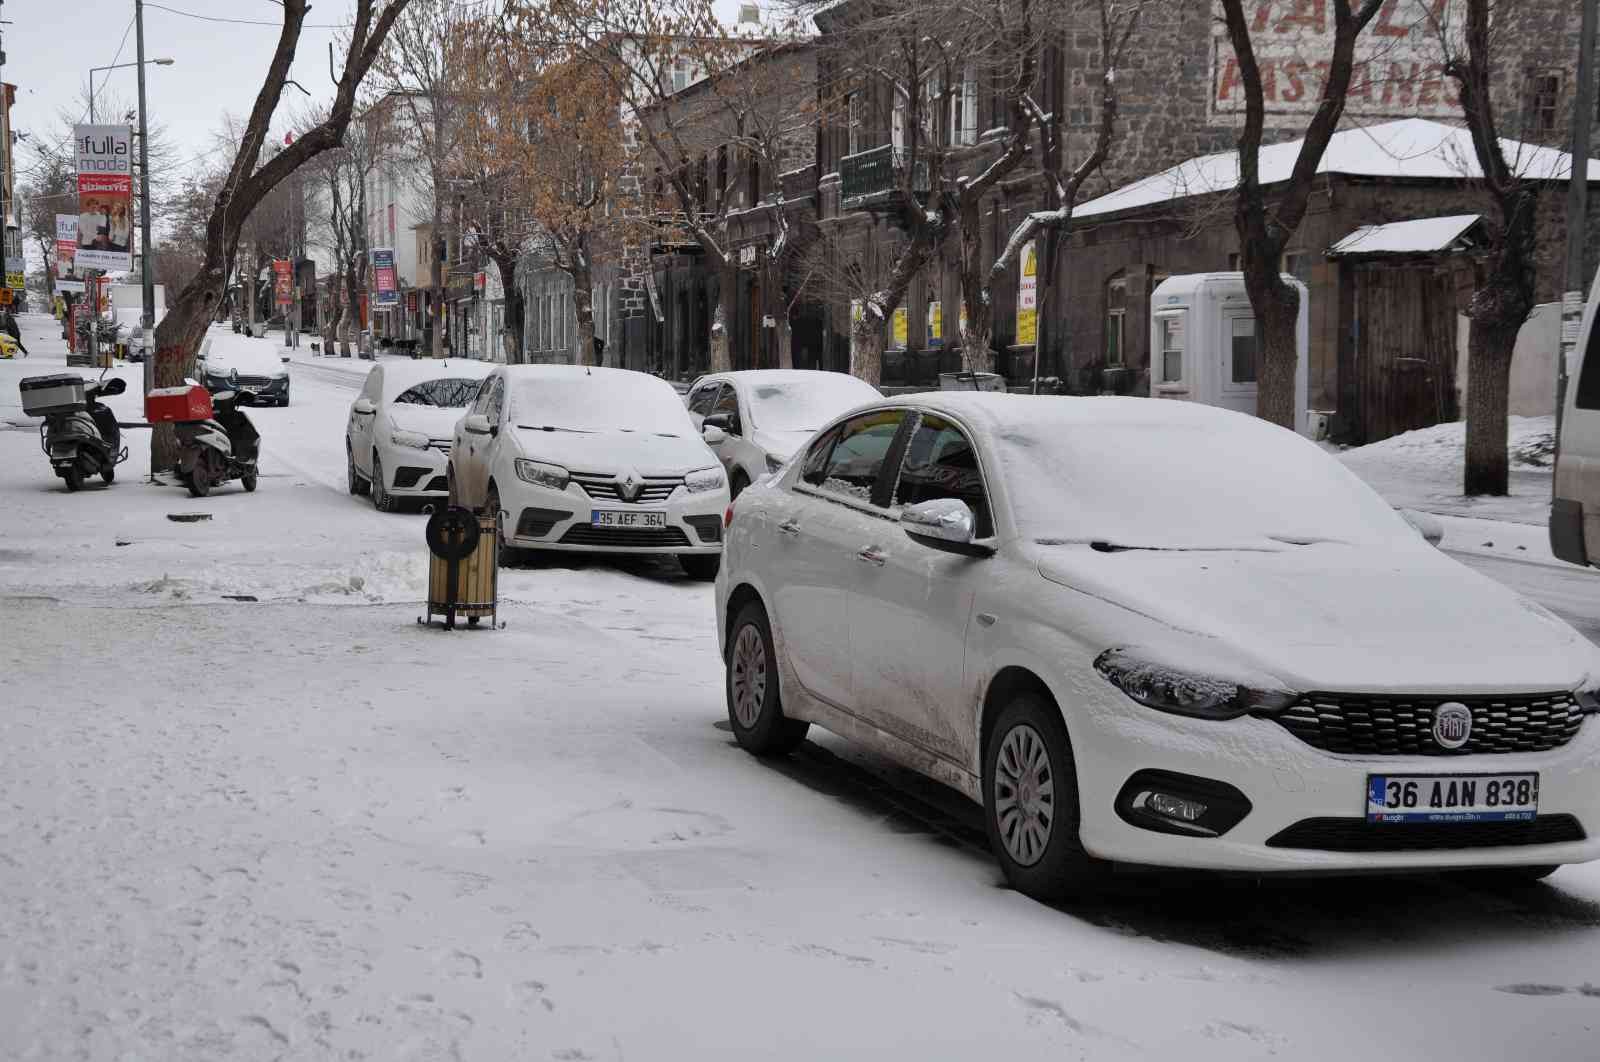 Kars’ta okullara kar tatili #kars